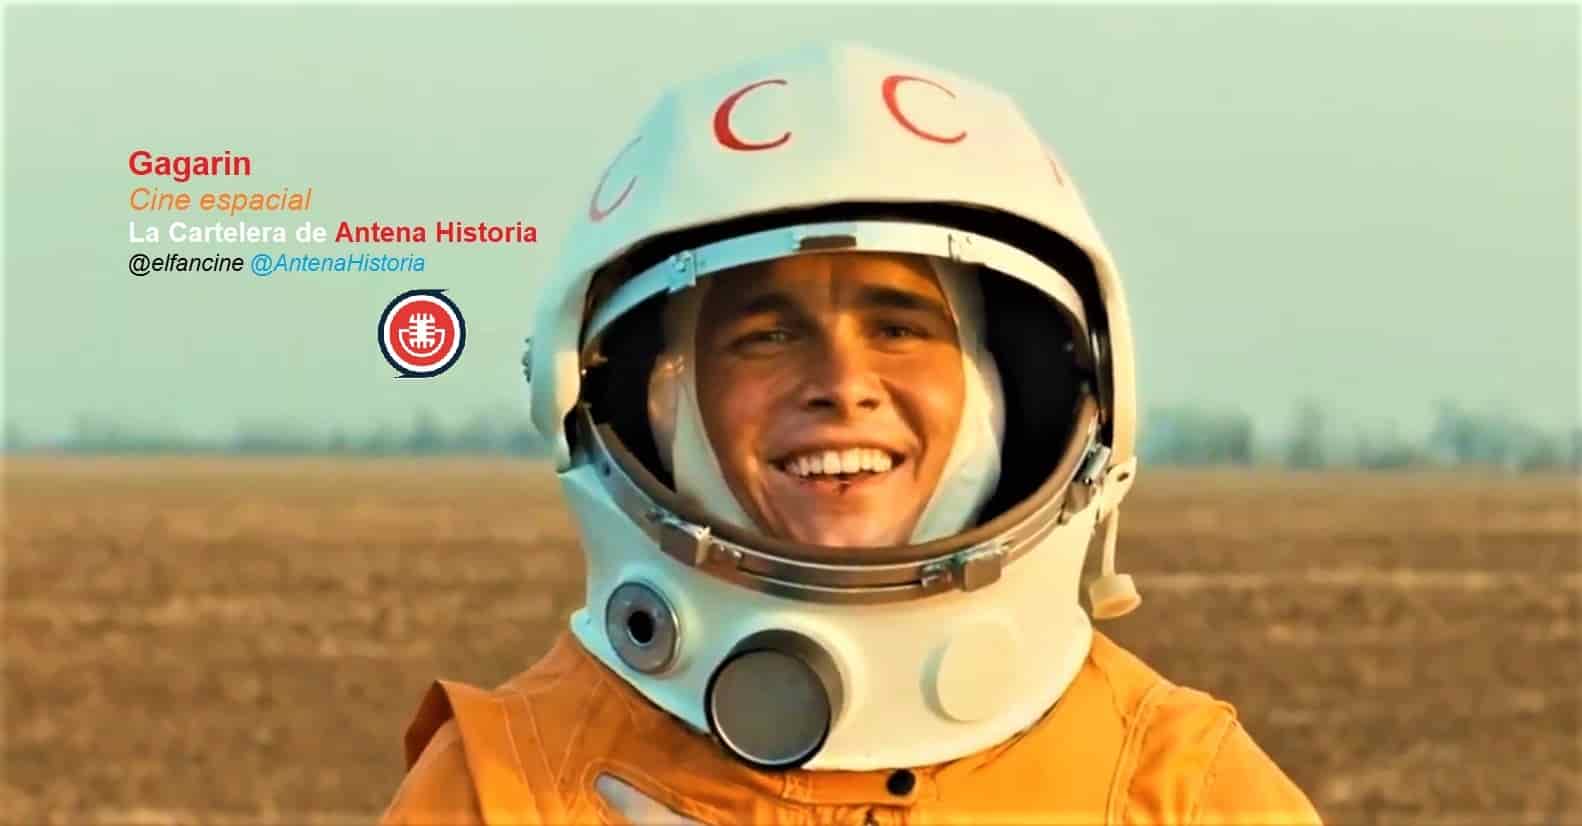 Гагарин - Gagarin - Carrera Espacial - Guerra Fría - el fancine - ÁlvaroGP - Cosmonautas - Astronautas - Cine espacial - Antena Historia - Podcast de cine